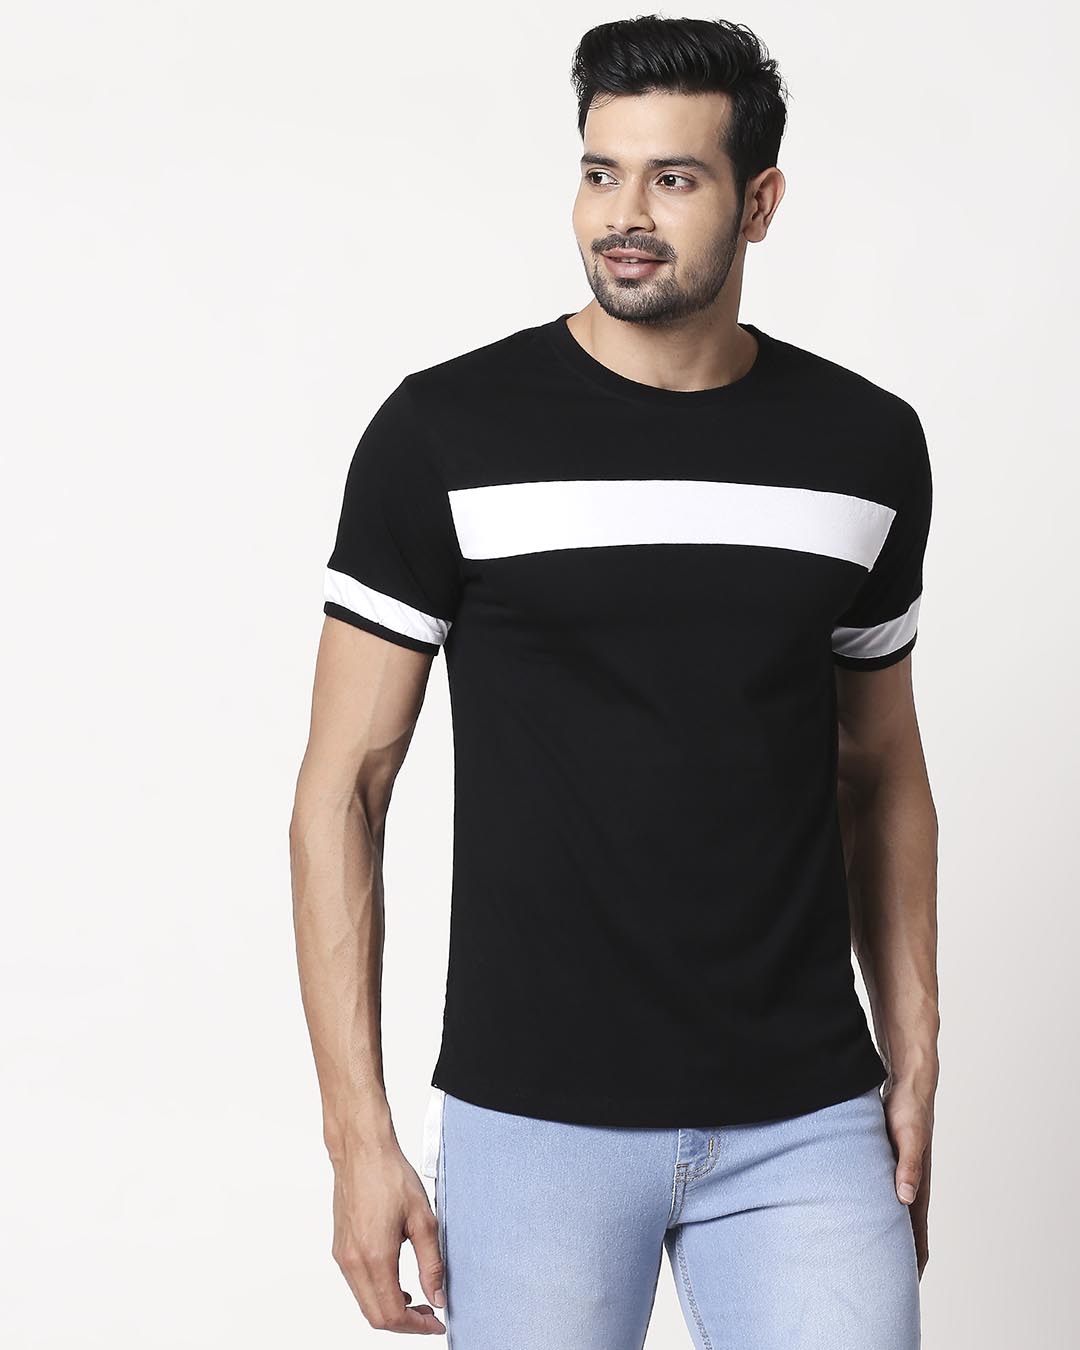 Buy Men's Plain Sport T-Shirt (Black-White) for Men black,white Online ...